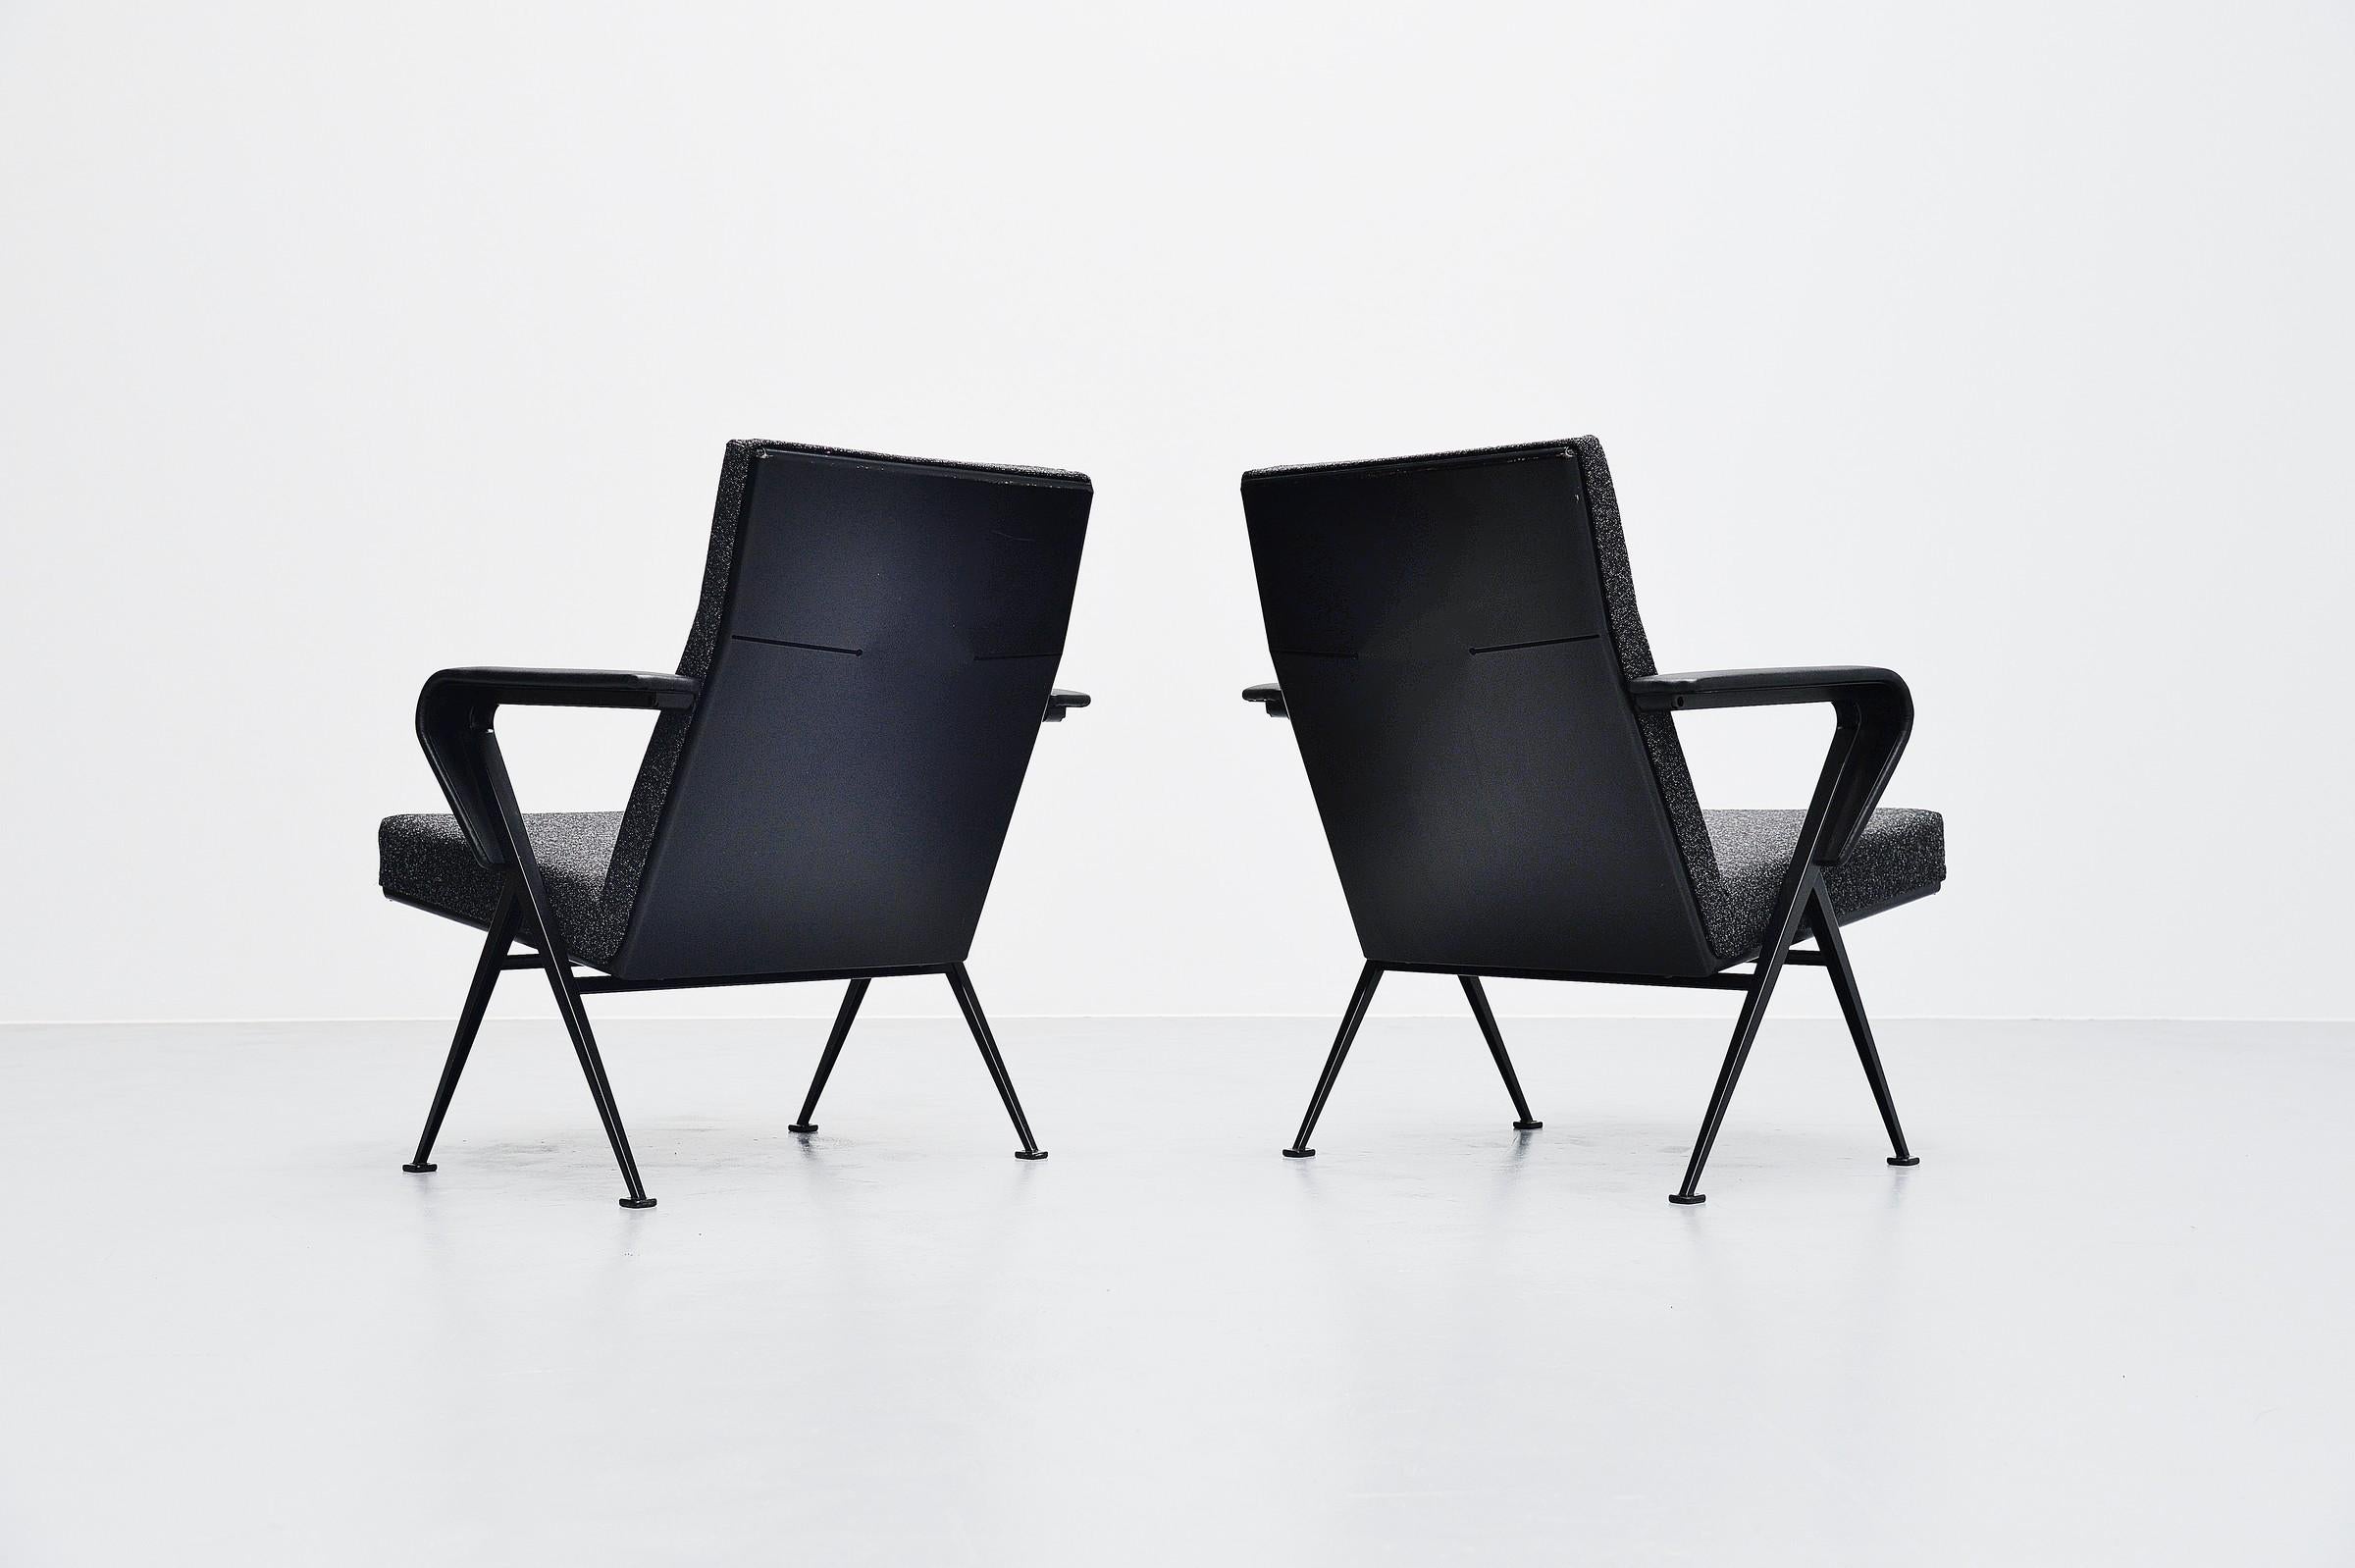 Bedeutendes Paar modernistischer Sessel Modell Repose, entworfen von Friso Kramer und hergestellt von Ahrend de Cirkel, Holland 1959. Die Stühle haben einen sehr schönen v-förmigen, schwarz lackierten Rahmen mit Metallstrukturen, der noch besser